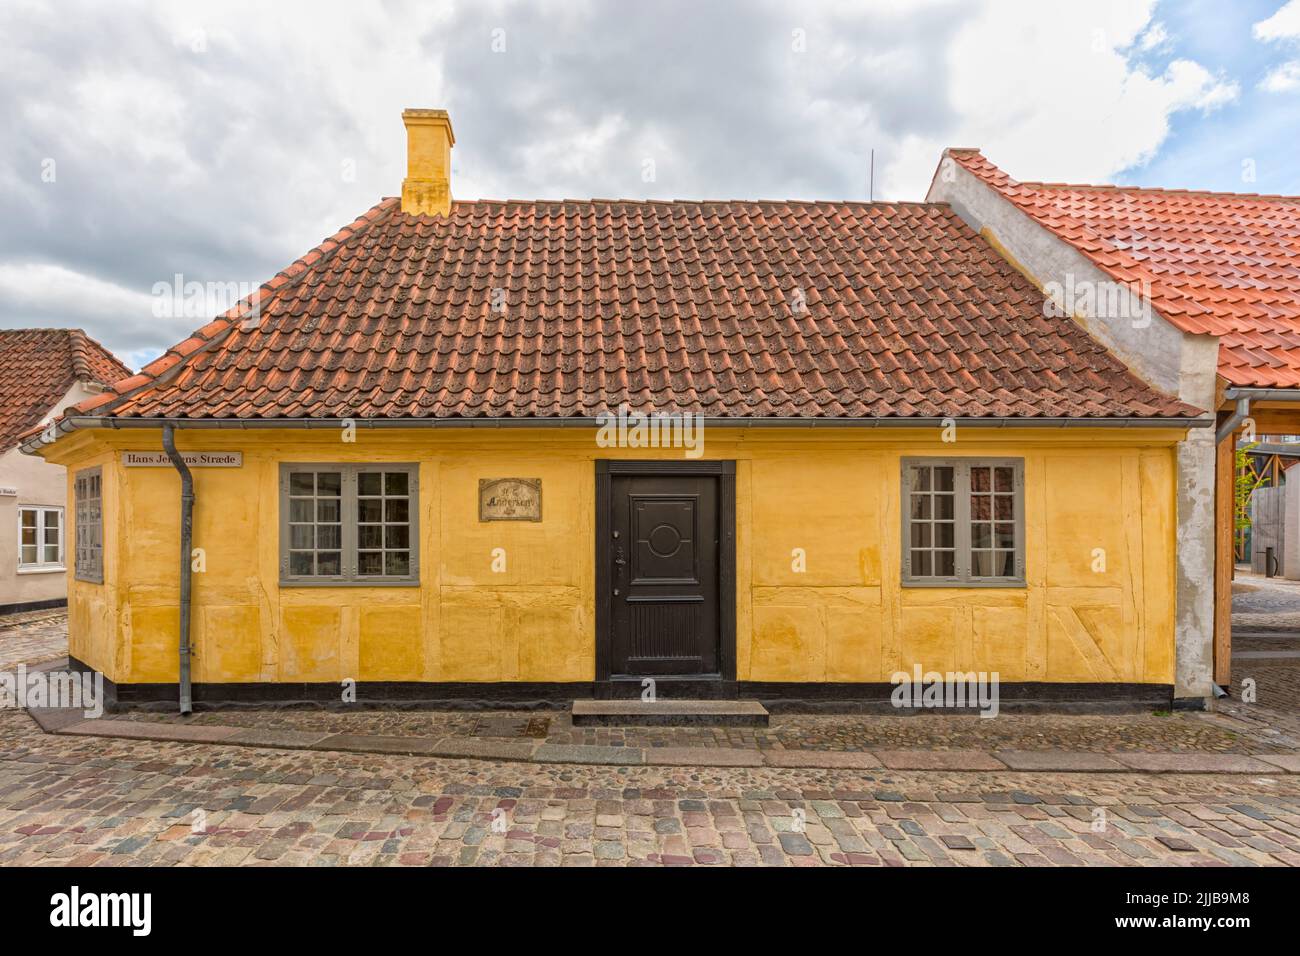 Hans Christian Andersens è il luogo di nascita nella città vecchia di Odense, Danimarca Foto Stock